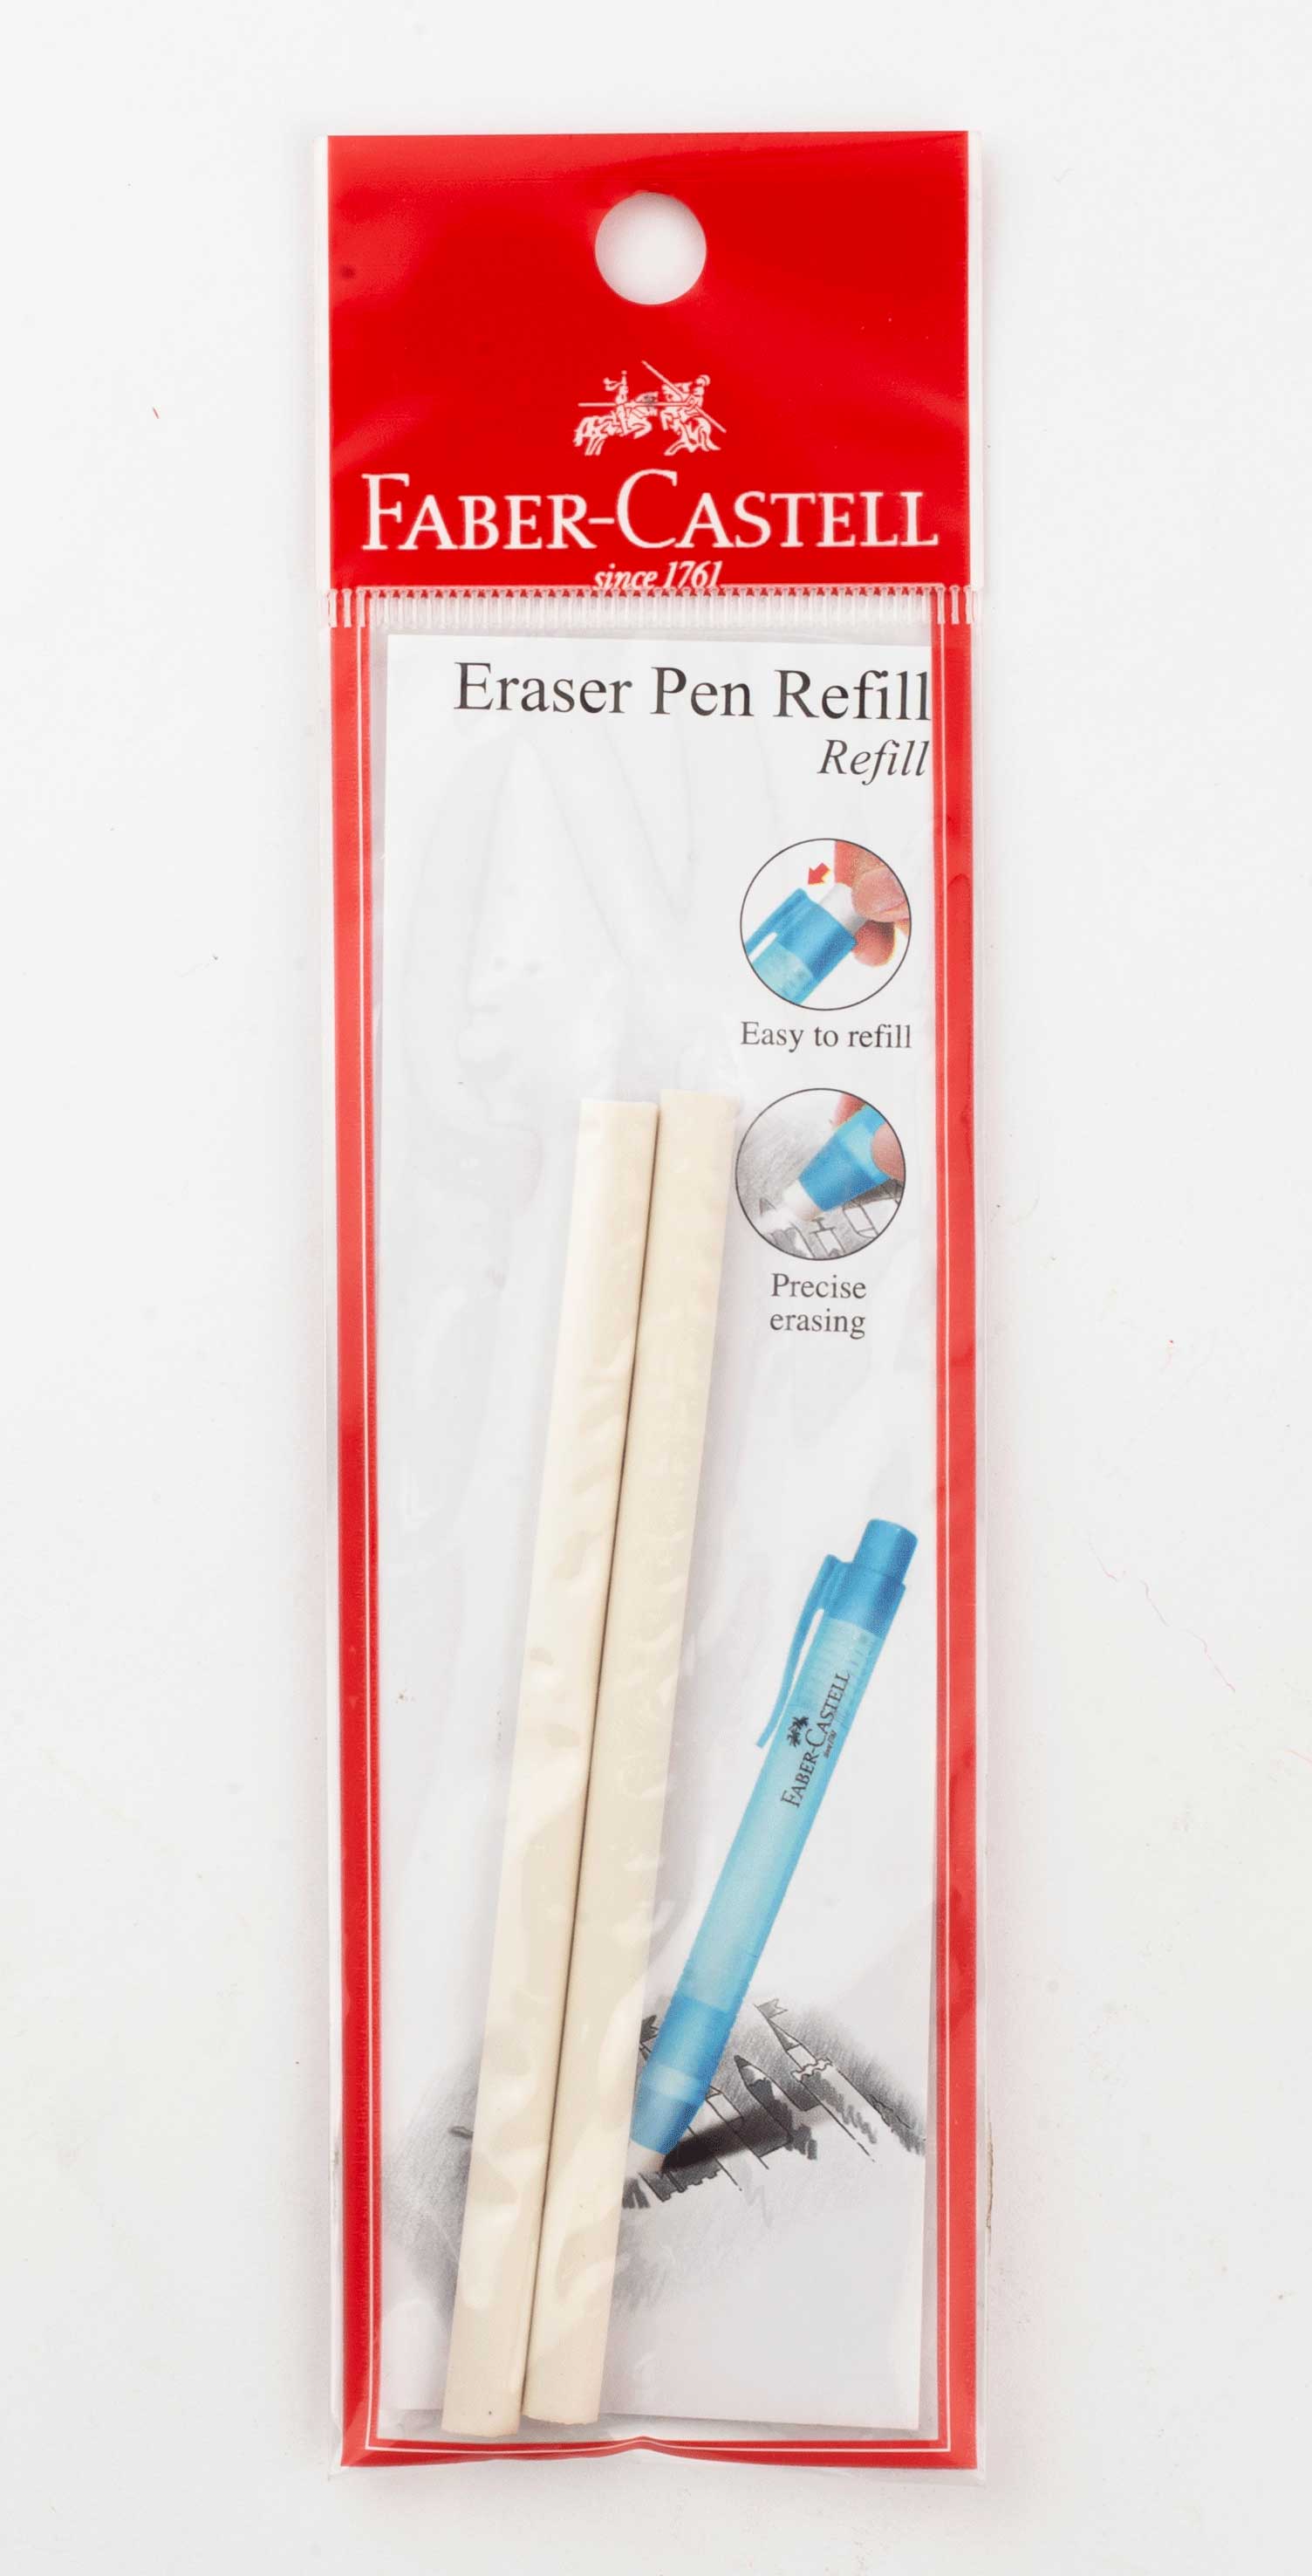 غيار أستيكة قلم فابر كاستل، قطعة واحدة، أبيض، 189900